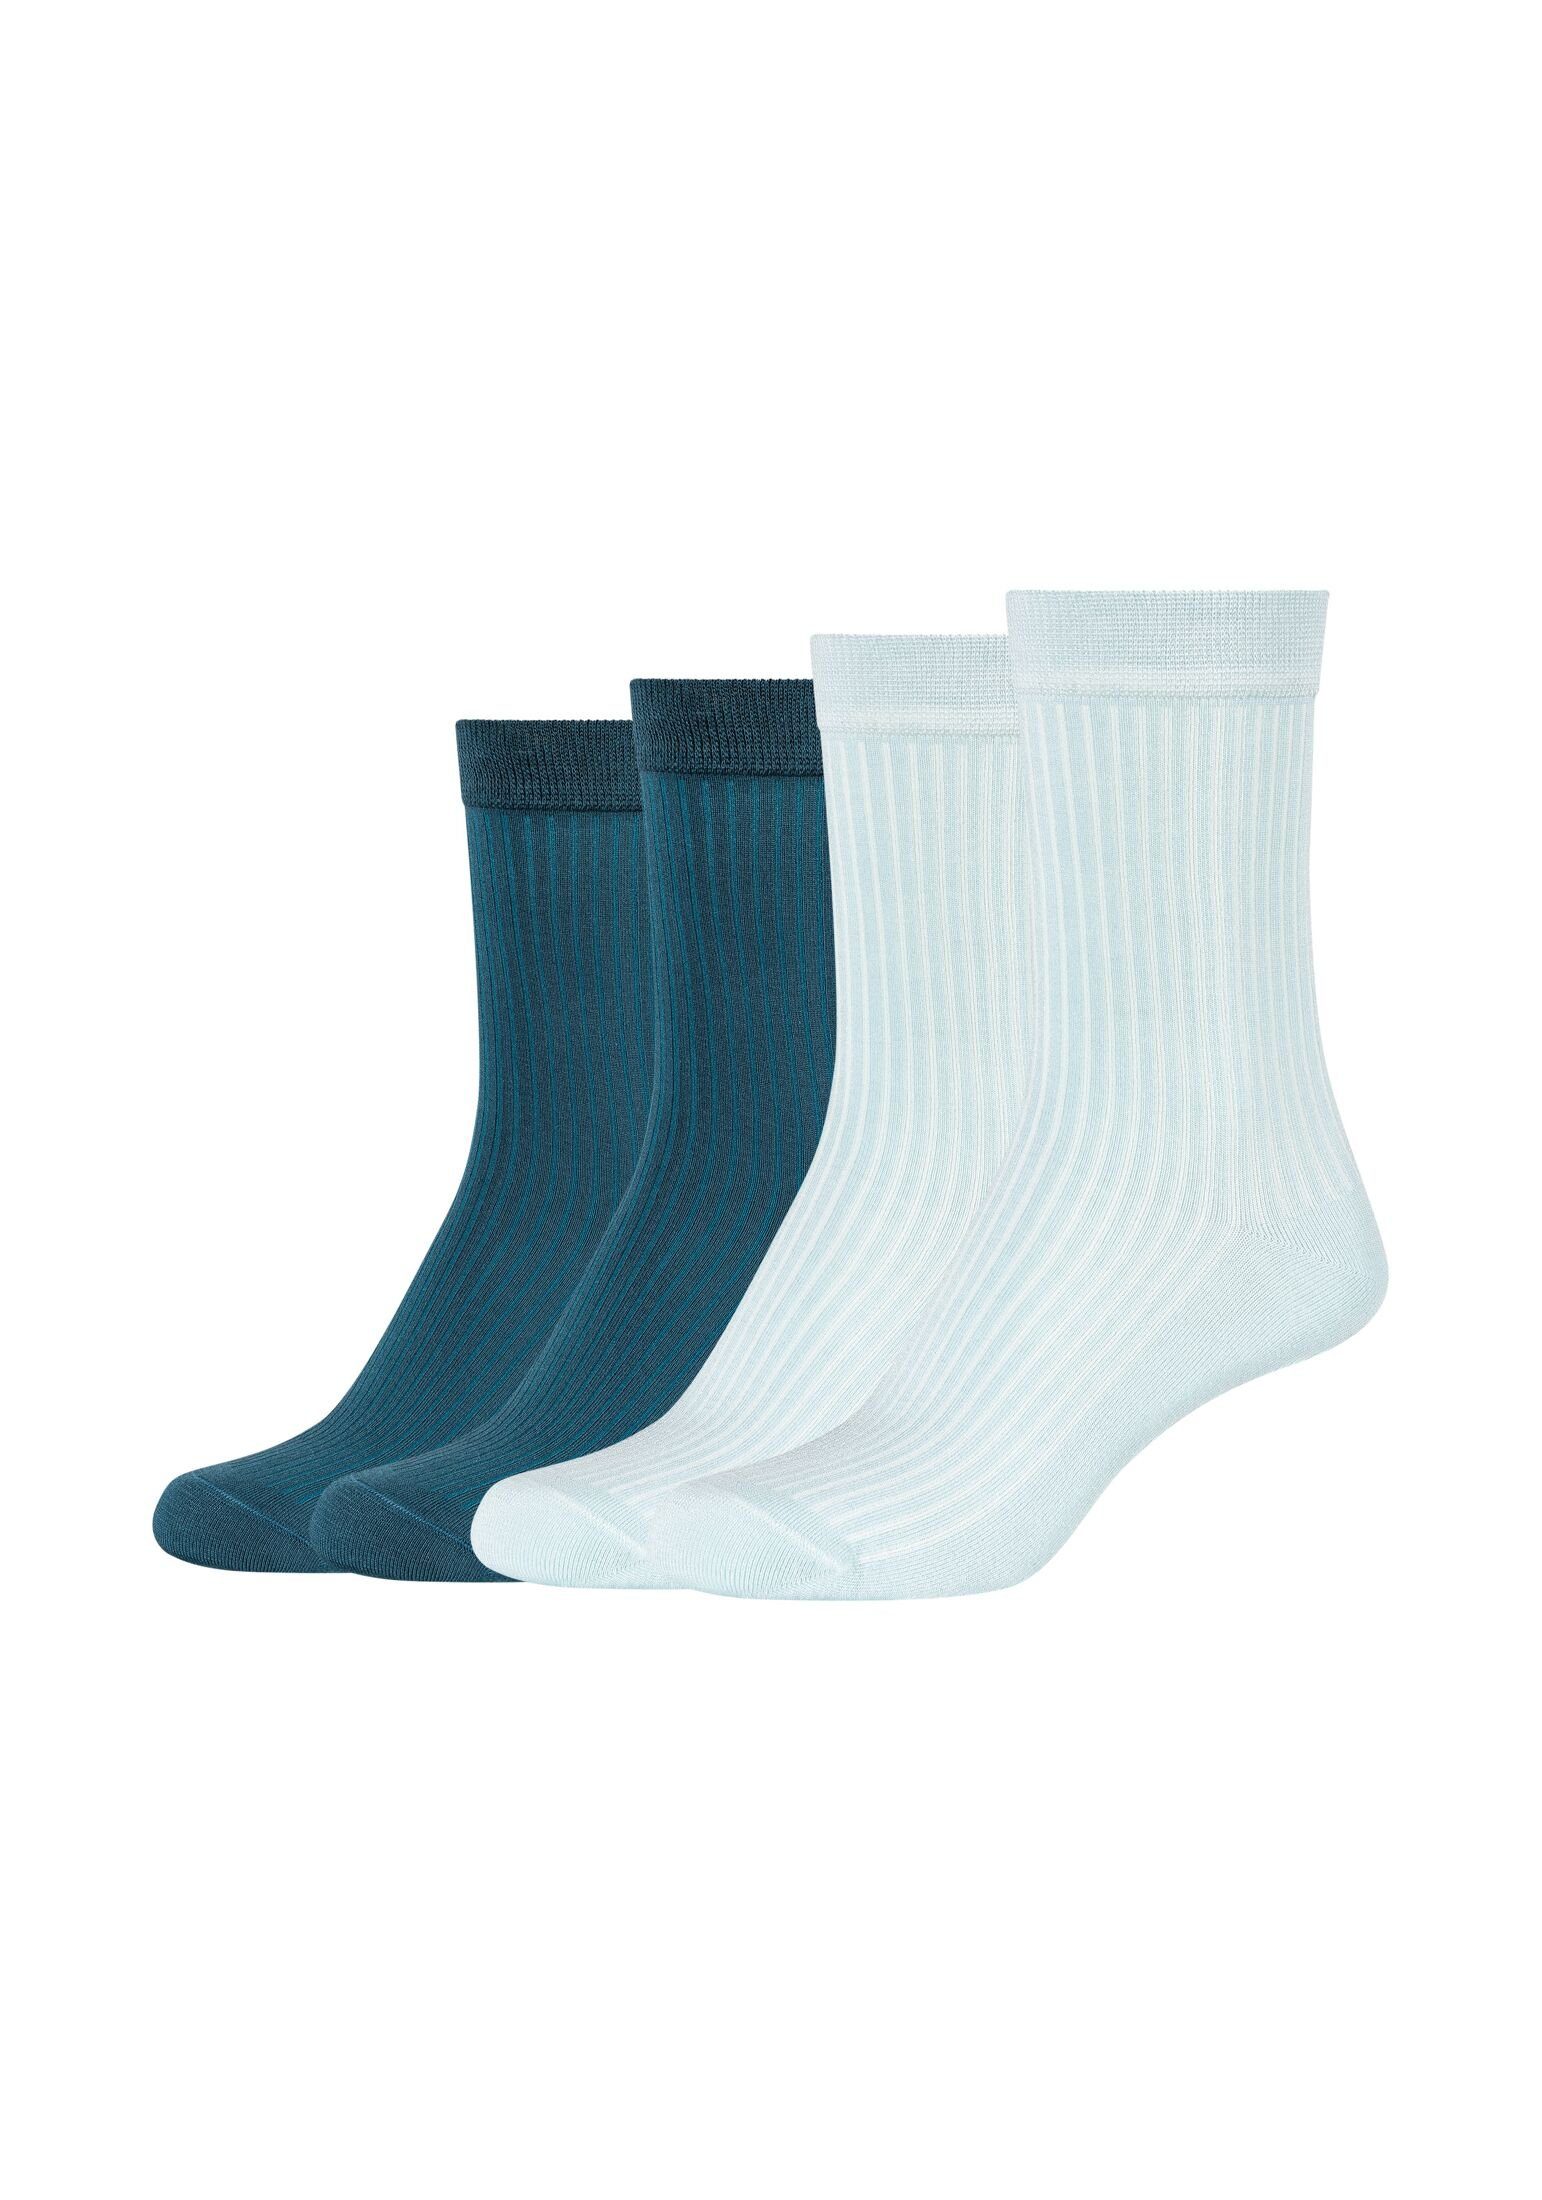 Camano Socken Socken 4er Pack starlight blue